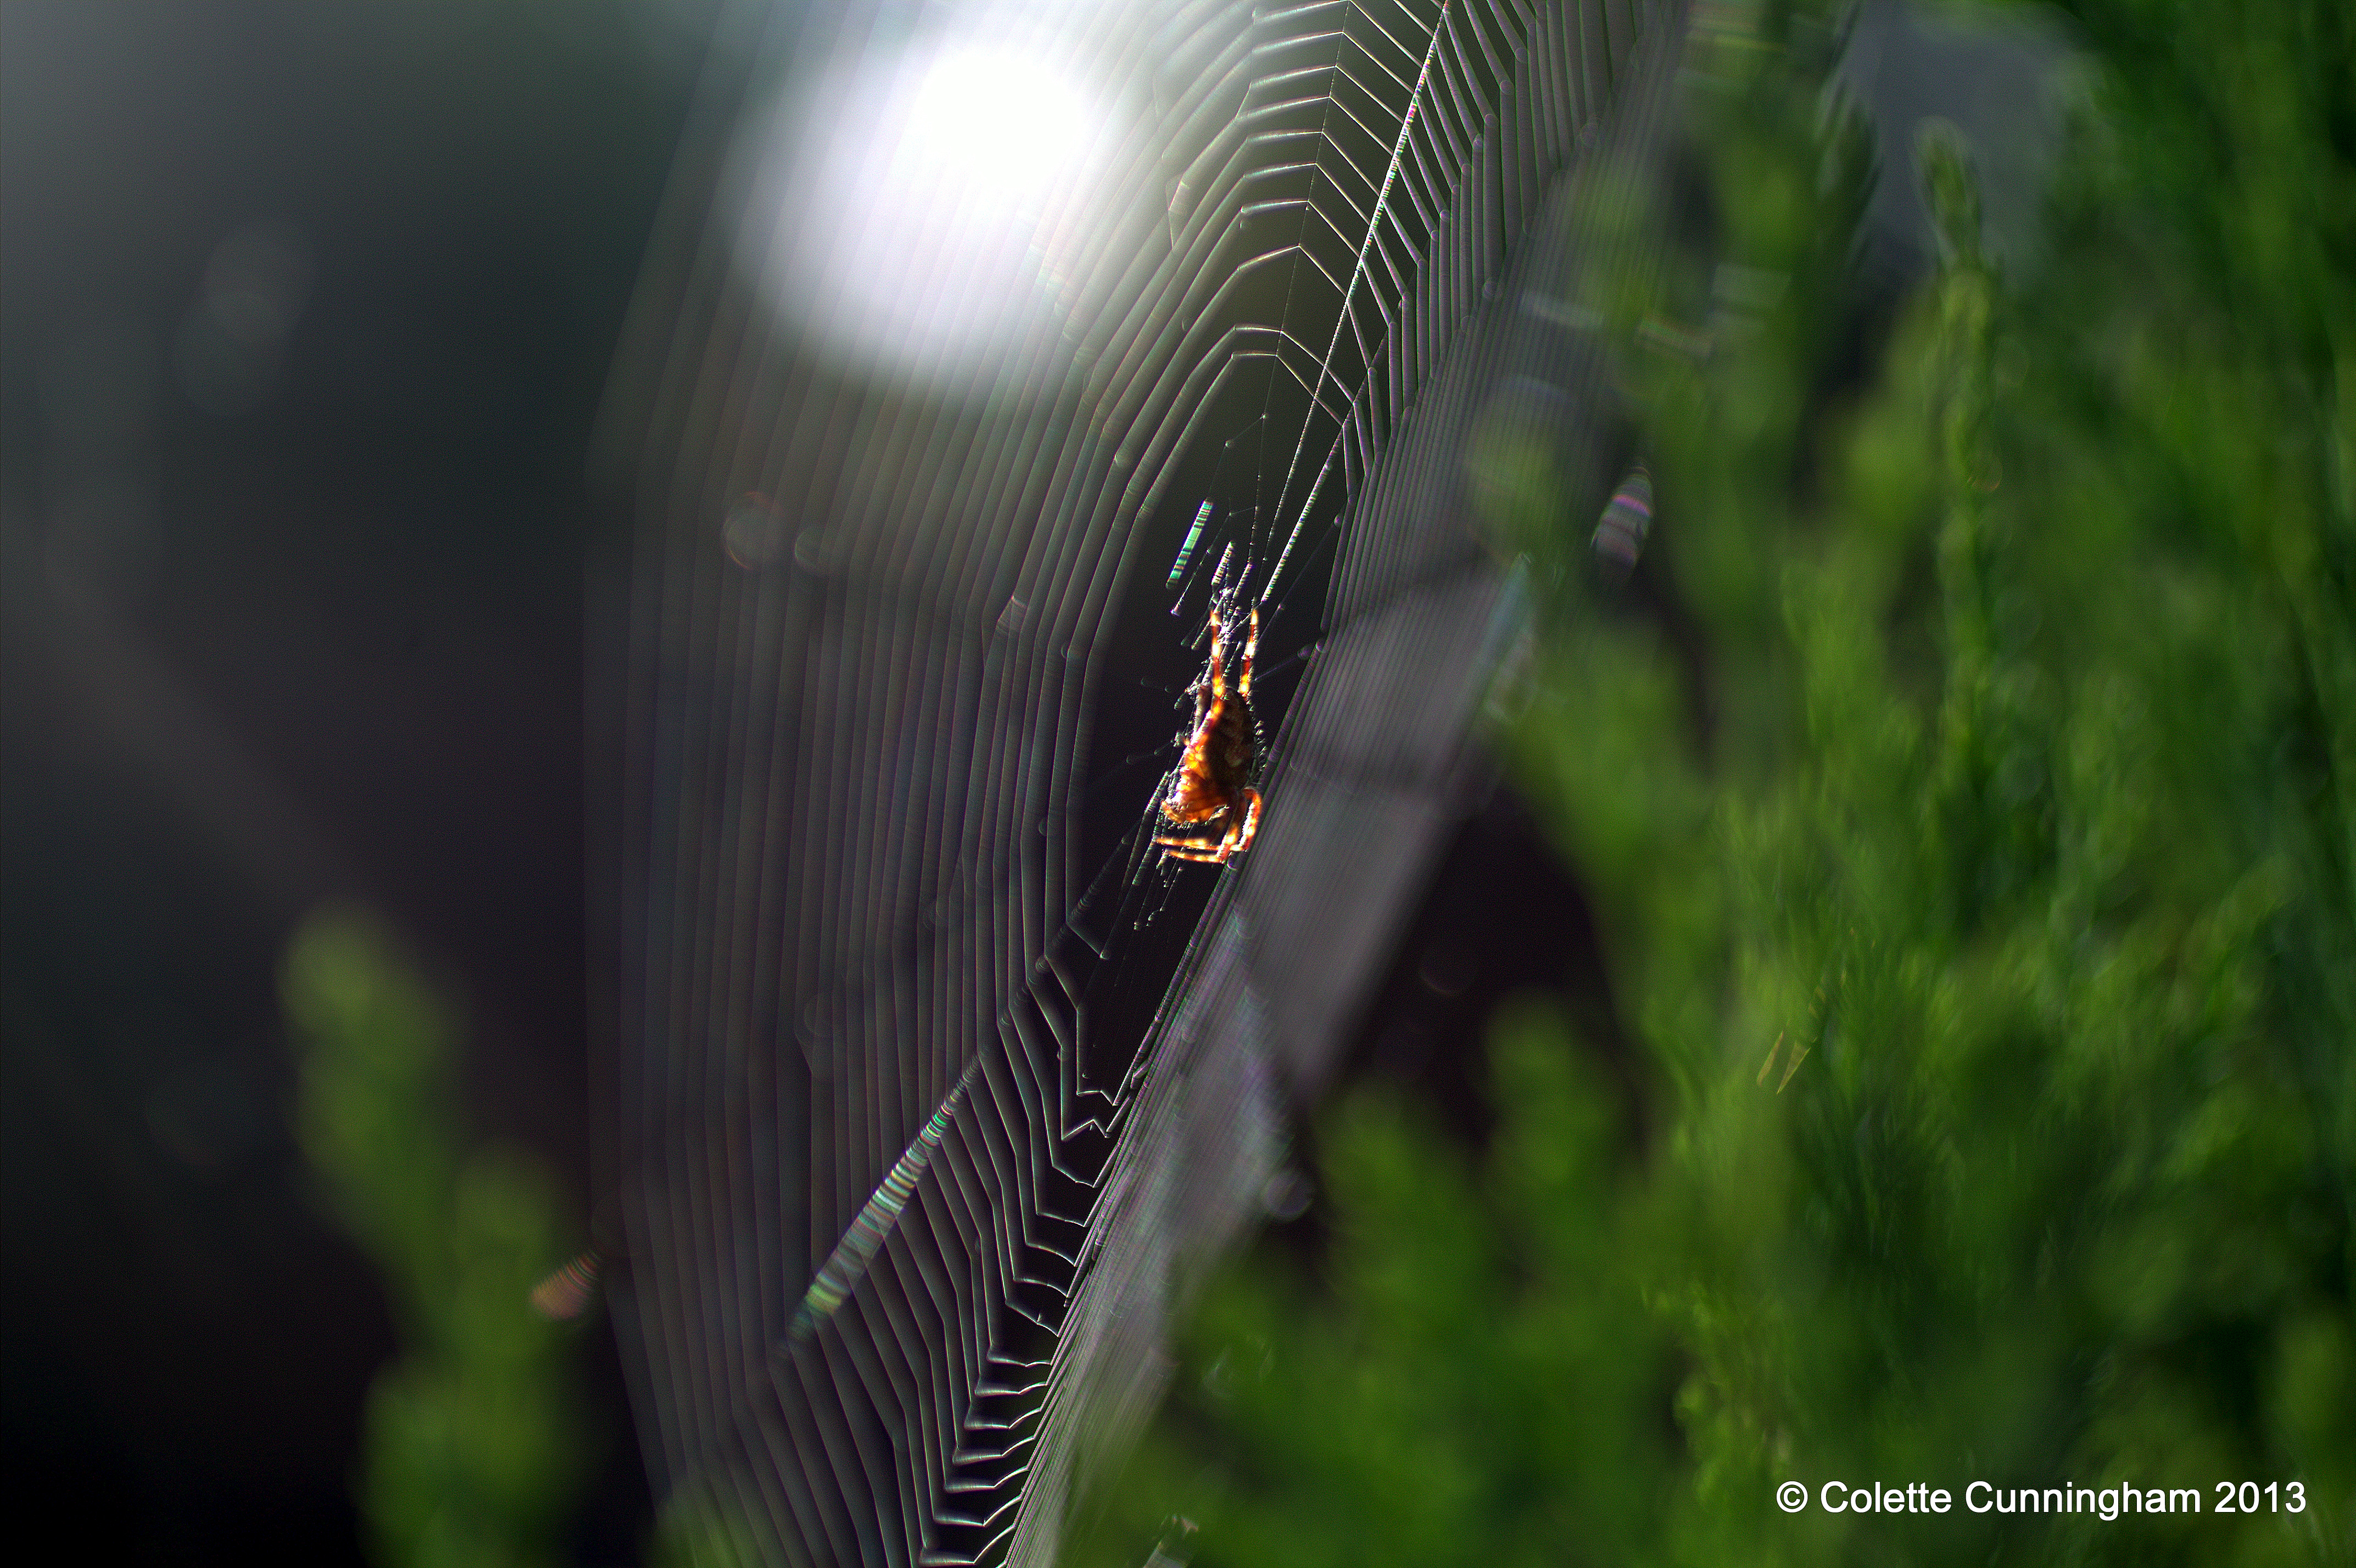 European Garden Spider in the evening sunshine